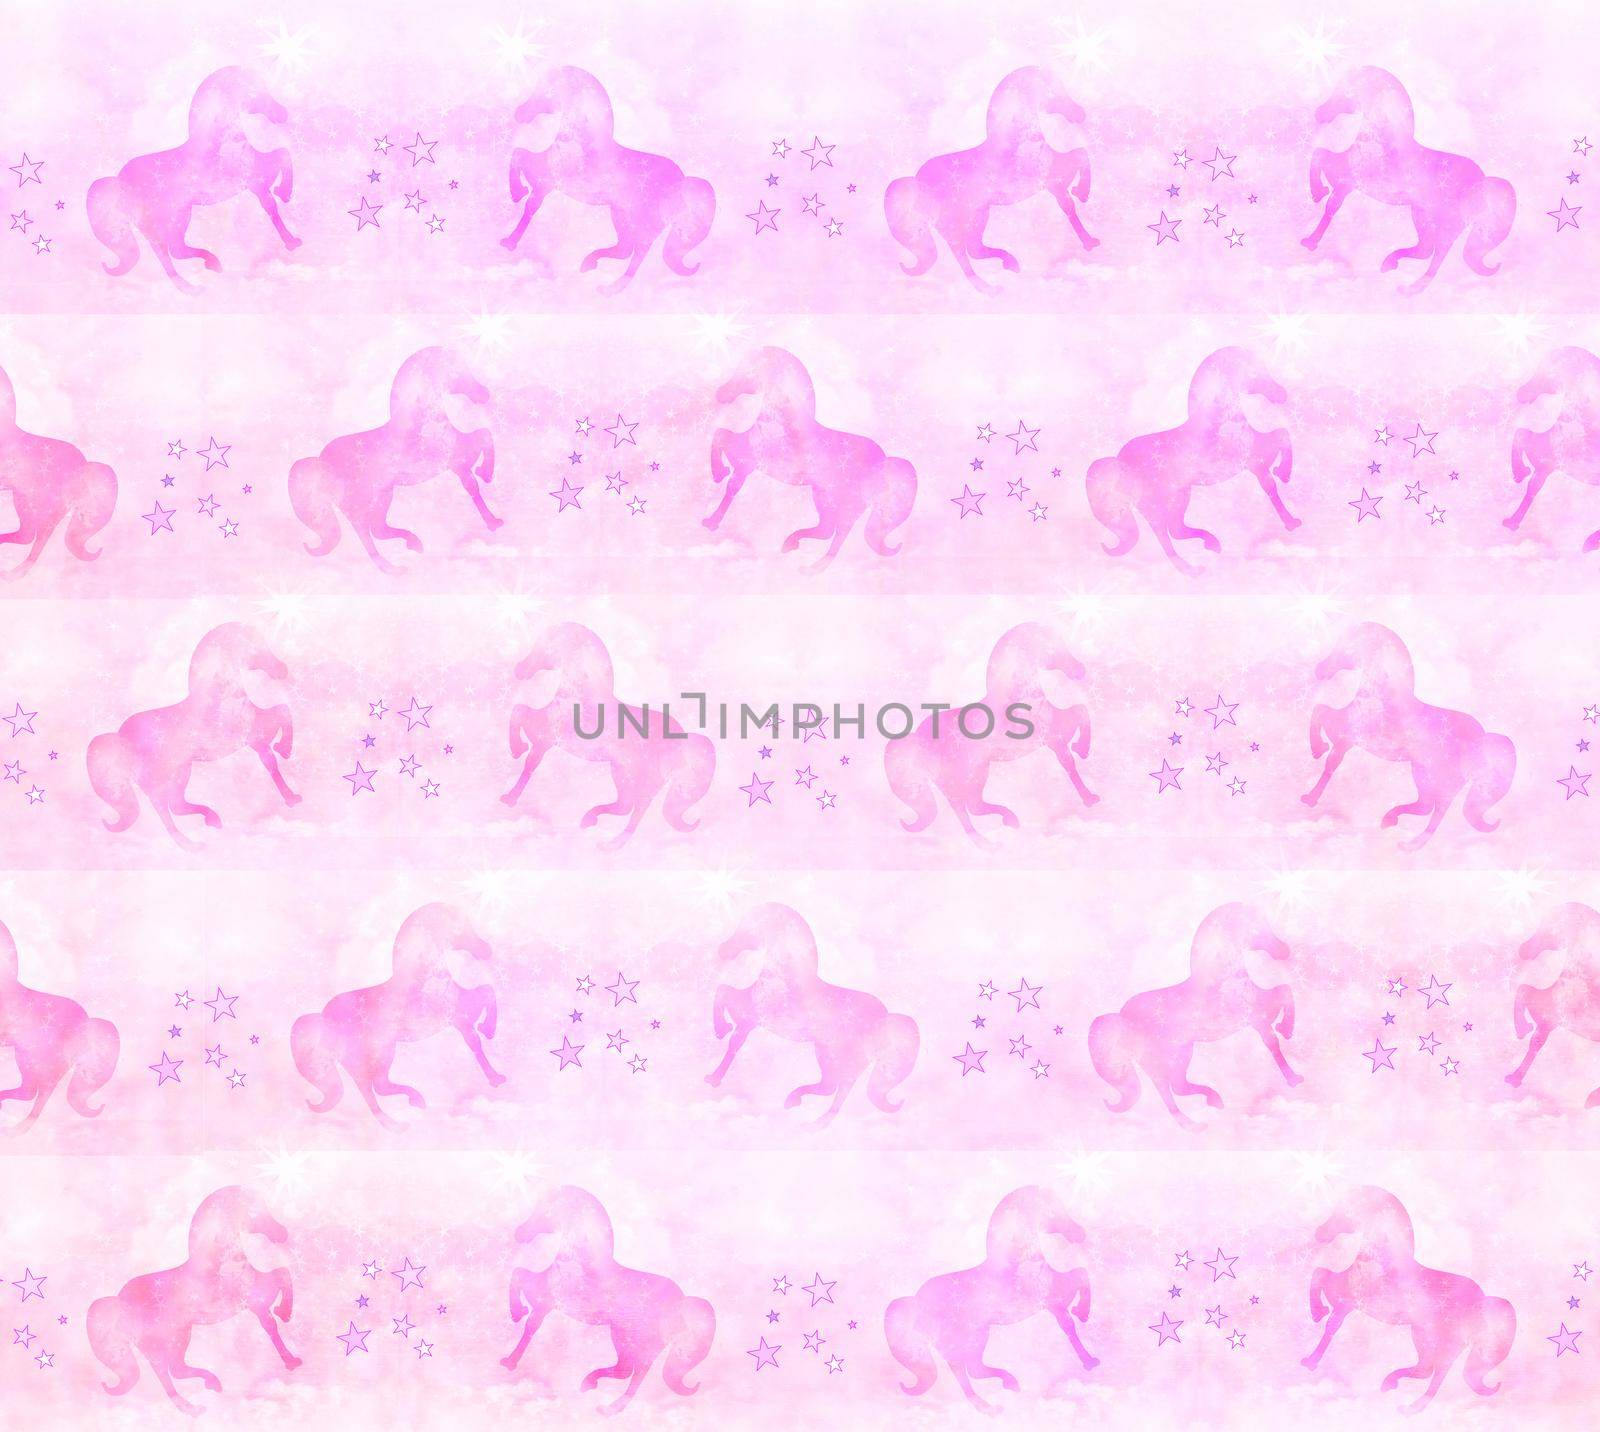 Unicorn - pastel pink pattern by JackyBrown